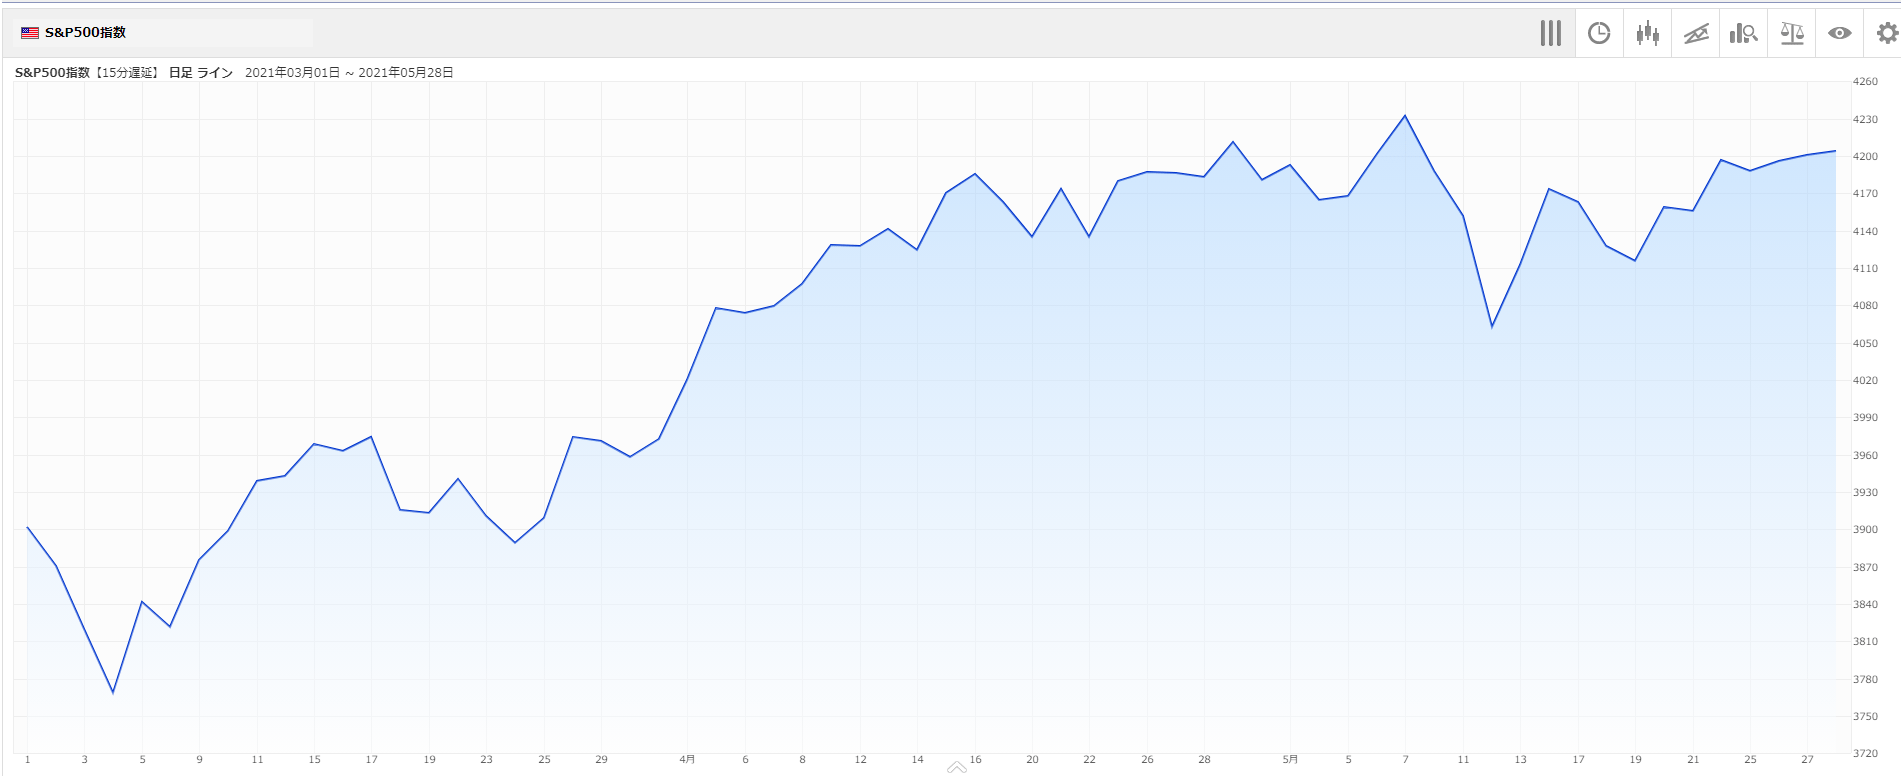 米国株人気銘柄ランキング 5月 S P500指数はほぼ横ばい 5月の個人投資家に人気だった銘柄は トウシル 楽天証券の投資情報メディア